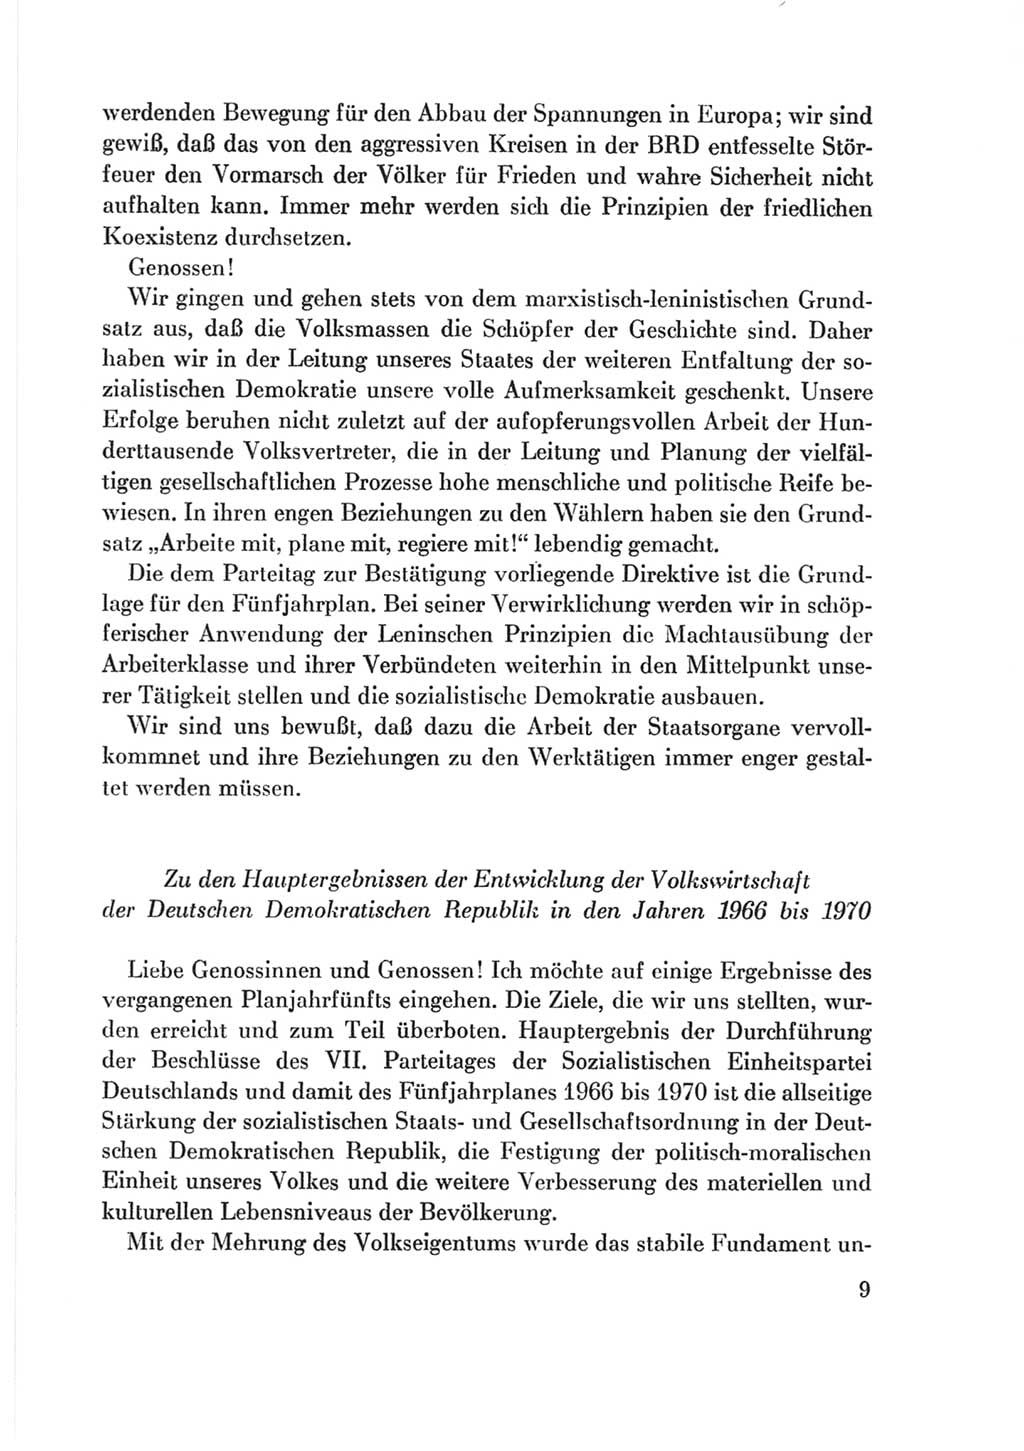 Protokoll der Verhandlungen des Ⅷ. Parteitages der Sozialistischen Einheitspartei Deutschlands (SED) [Deutsche Demokratische Republik (DDR)] 1971, Band 2, Seite 9 (Prot. Verh. Ⅷ. PT SED DDR 1971, Bd. 2, S. 9)